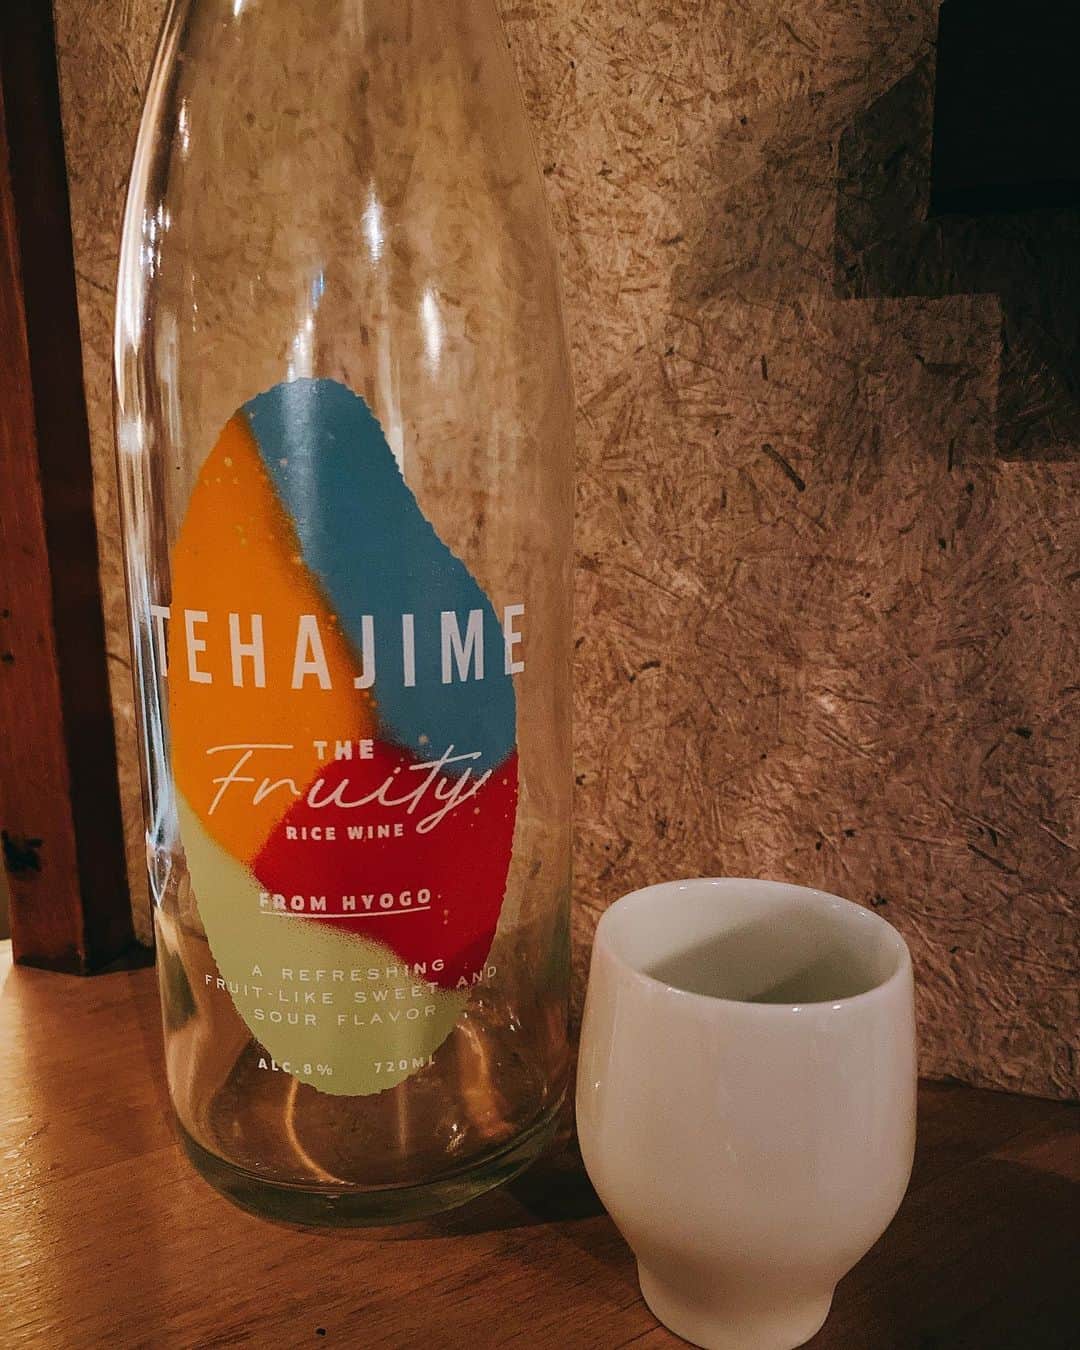 FukamizuYukina さんのインスタグラム写真 - (FukamizuYukina Instagram)「_ 渋谷にある日本酒ダイニング酒場 @sakeba.shibuya に行ってきたよ🍶💕 ㅤㅤㅤㅤㅤㅤㅤㅤㅤㅤㅤㅤㅤ ㅤㅤㅤㅤㅤㅤㅤㅤㅤㅤㅤㅤㅤ 『TEHAJIME』は果実のような日本酒で アルコール度数8%と低めだから 日本酒をはじめて飲む方にもすごく おすすめ☝🏻💓食前酒として頂いた🎶 ㅤㅤㅤㅤㅤㅤㅤㅤㅤㅤㅤㅤㅤ ㅤㅤㅤㅤㅤㅤㅤㅤㅤㅤㅤㅤㅤ 『 純米吟醸 SHINKA "阿波トロピカル" 』は トロピカルフルーツを思わせる香りが特徴🍊 ㅤㅤㅤㅤㅤㅤㅤㅤㅤㅤㅤㅤㅤ ㅤㅤㅤㅤㅤㅤㅤㅤㅤㅤㅤㅤㅤ 『 純米吟醸 白麹仕込 TAIHAKU 』は 白麹特有の酸味が加わってすっきりとした味で 水みたいにすいすい飲んじゃう🥛💕 ㅤㅤㅤㅤㅤㅤㅤㅤㅤㅤㅤㅤㅤ ㅤㅤㅤㅤㅤㅤㅤㅤㅤㅤㅤㅤㅤ 『 純米吟醸 理系兄弟 』は酸味、甘味の バランスが良くて食中酒としてつくられた お酒🧮めっちゃ飲みやすかった🎶 ㅤㅤㅤㅤㅤㅤㅤㅤㅤㅤㅤㅤㅤ ㅤㅤㅤㅤㅤㅤㅤㅤㅤㅤㅤㅤㅤ 『 Bar 362+3 2018 』は京丹後の日本酒バー ［ Bar 362+3 ］でしか味わえない "究極のテロノワール"体験を商品化した 日本酒。とのこと。飲んだ感じ、辛口で 白ワインみたいで、スッキリ✨ ㅤㅤㅤㅤㅤㅤㅤㅤㅤㅤㅤㅤㅤ ㅤㅤㅤㅤㅤㅤㅤㅤㅤㅤㅤㅤㅤ お通しで、帆立の刺身・あおさのクリームチーズ・ 秋刀魚の南蛮漬けの3種類もきた🐟♡ ㅤㅤㅤㅤㅤㅤㅤㅤㅤㅤㅤㅤㅤ ㅤㅤㅤㅤㅤㅤㅤㅤㅤㅤㅤㅤㅤ あと、炙りトロ鯖を注文したよ💓 どれも美味しかったし、他にもメニュー たくさんあって迷った🤭🌀💫 ㅤㅤㅤㅤㅤㅤㅤㅤㅤㅤㅤㅤㅤ ㅤㅤㅤㅤㅤㅤㅤㅤㅤㅤㅤㅤㅤ カウンターと座席、テーブル席があって 女性同士のお客さんも多かった🚺💕 ㅤㅤㅤㅤㅤㅤㅤㅤㅤㅤㅤㅤㅤ ㅤㅤㅤㅤㅤㅤㅤㅤㅤㅤㅤㅤㅤ そしてなんとなんと😳‼️ 『 この投稿を提示でお会計10%OFF 』 になるので、よかったら使ってね💓 ㅤㅤㅤㅤㅤㅤㅤㅤㅤㅤㅤㅤㅤ ㅤㅤㅤㅤㅤㅤㅤㅤㅤㅤㅤㅤㅤ  #sakeba #渋谷日本酒 #日本酒 #日本酒バー #隠れ家 #ペアリング #japanesesake #sakeba渋谷 #pr #トリドリベース」9月22日 20時15分 - peitaro72